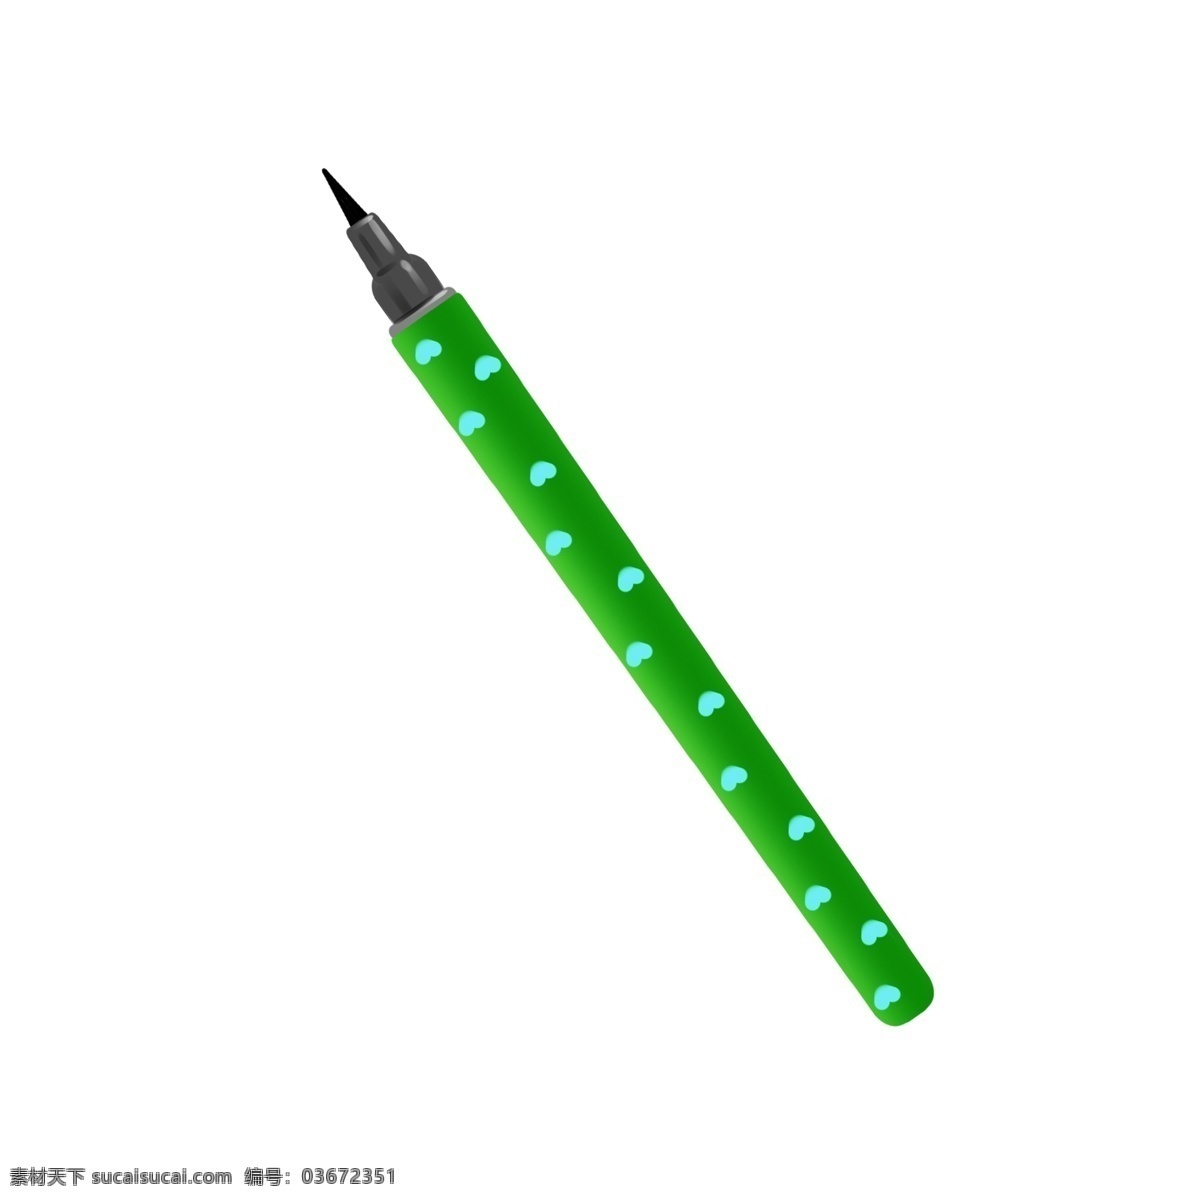 绿色 中性笔 笔 插图 绿色的中性笔 绿色的圆珠笔 卡通中性笔 圆珠笔插画 学习用品 写作业上学